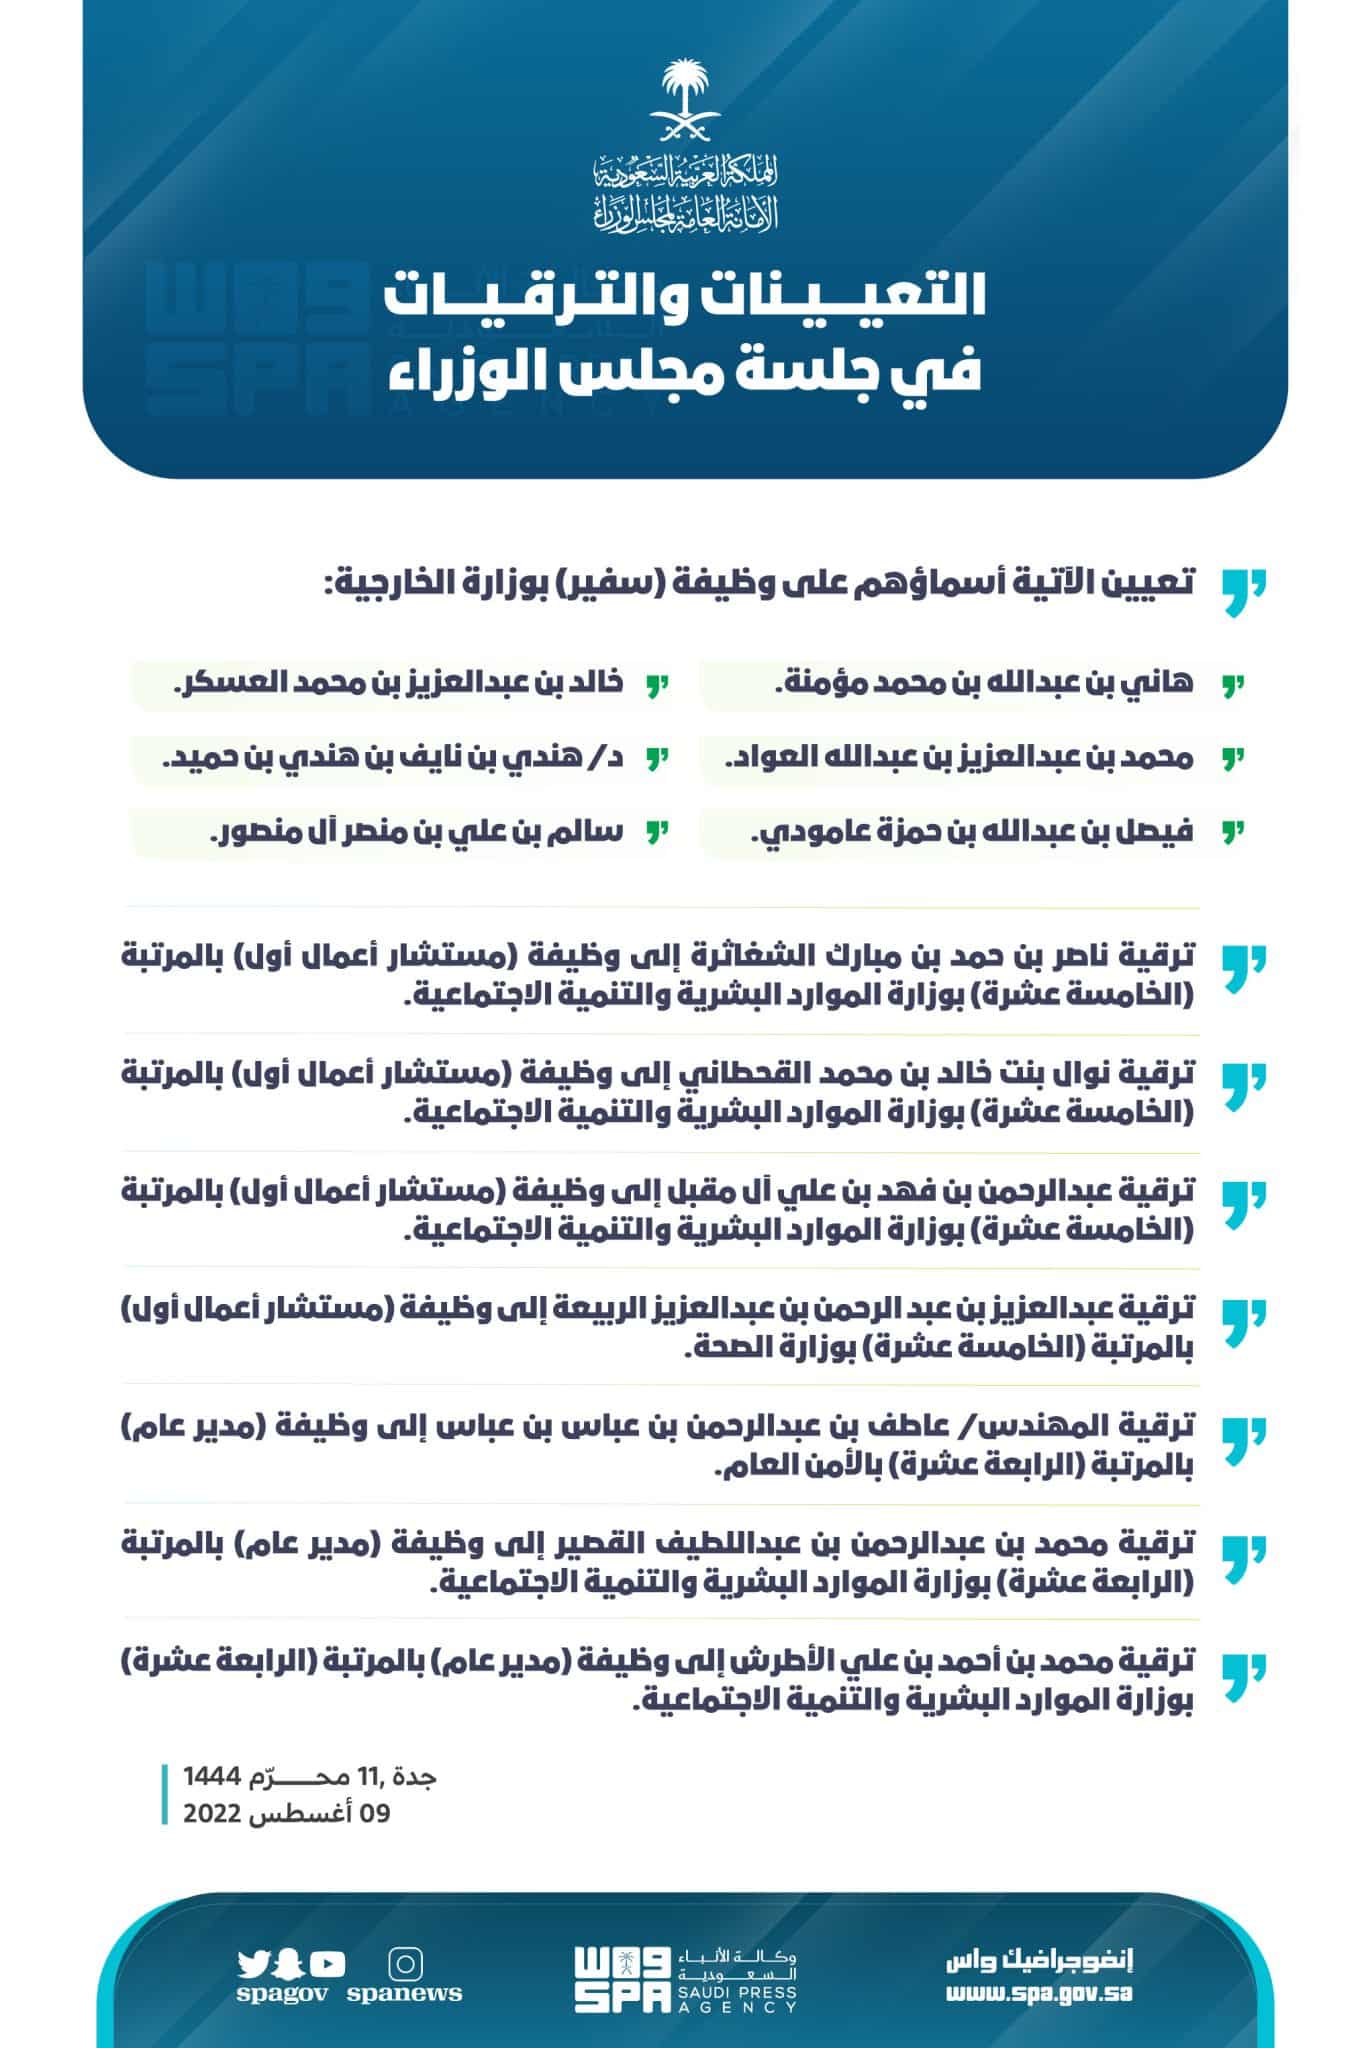 عاجل| الملك سلمان يُصدر 9 أوامر وقرارات جديدة هامة تتضمن ترقيات وتعيينات